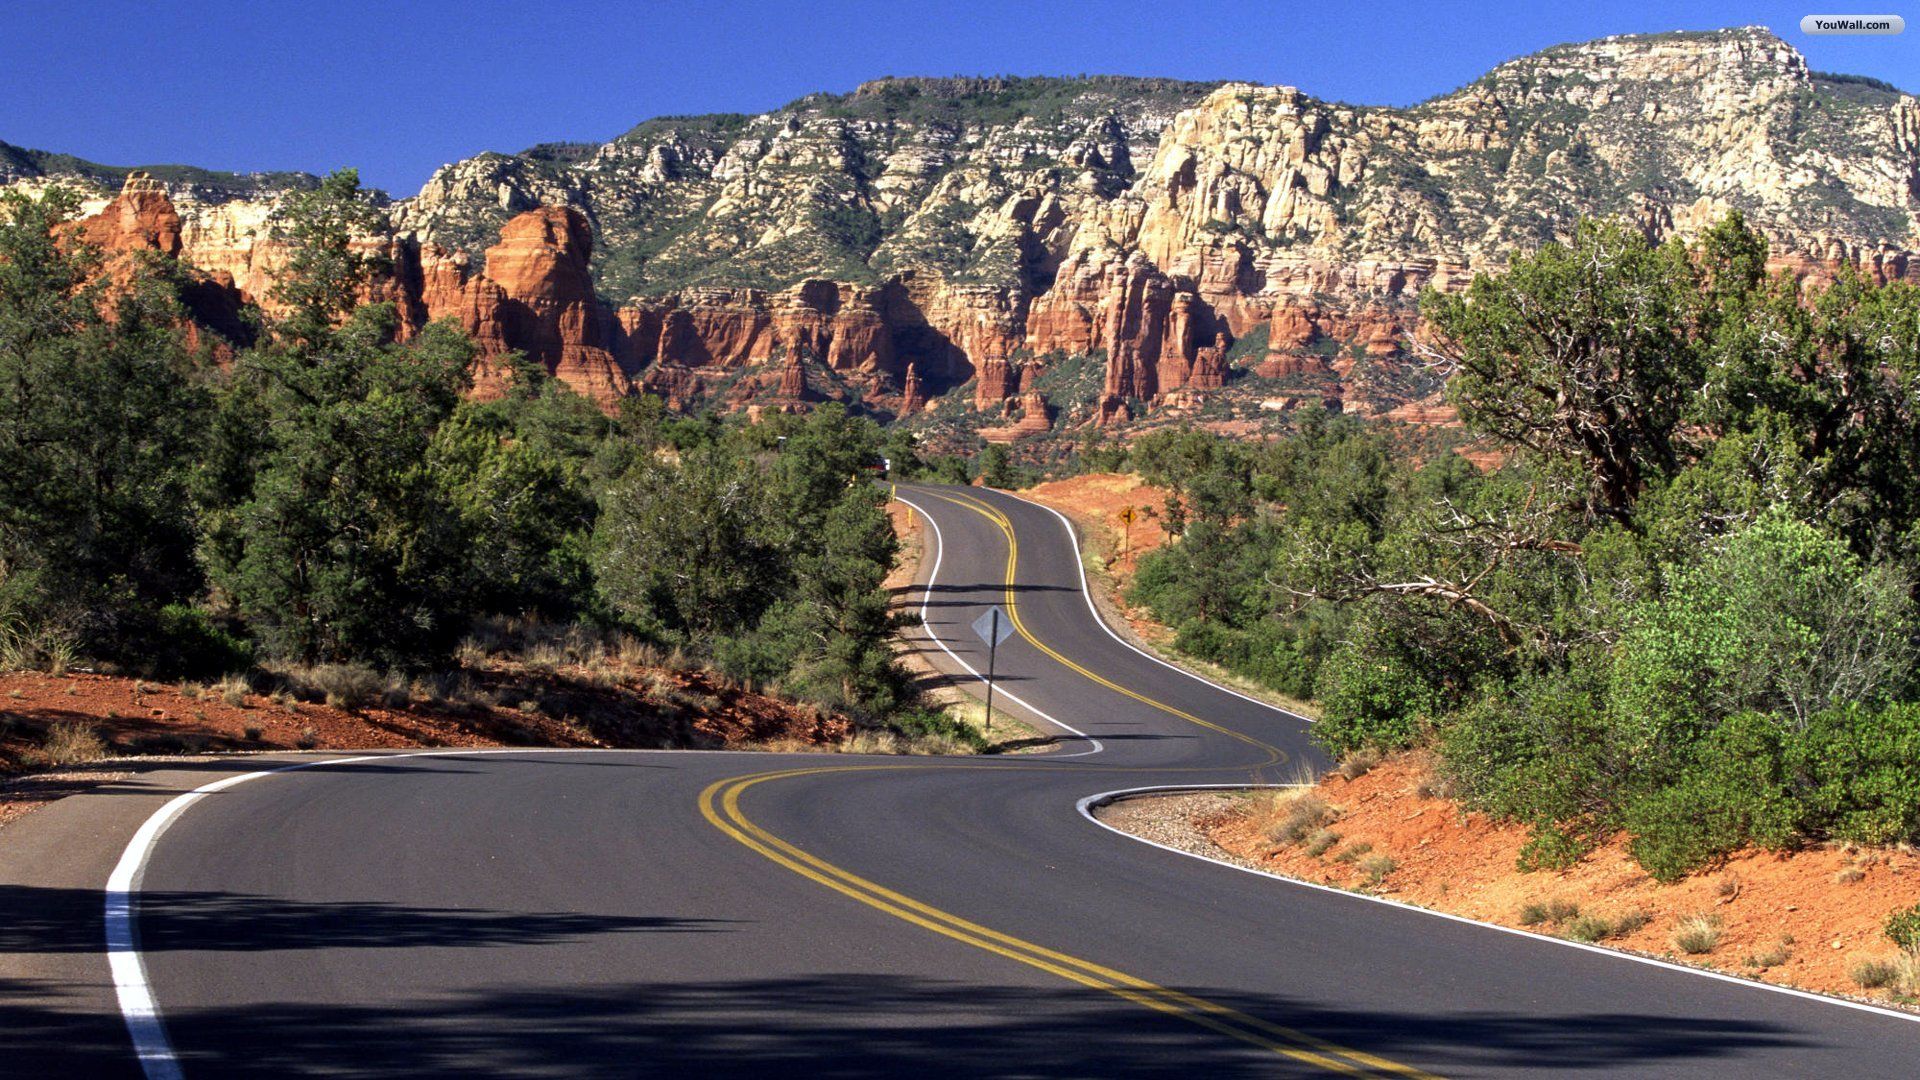 Arizona ad desktop wallpaper x viaje por carretera en los eeuu esenciales de viaje paisajes